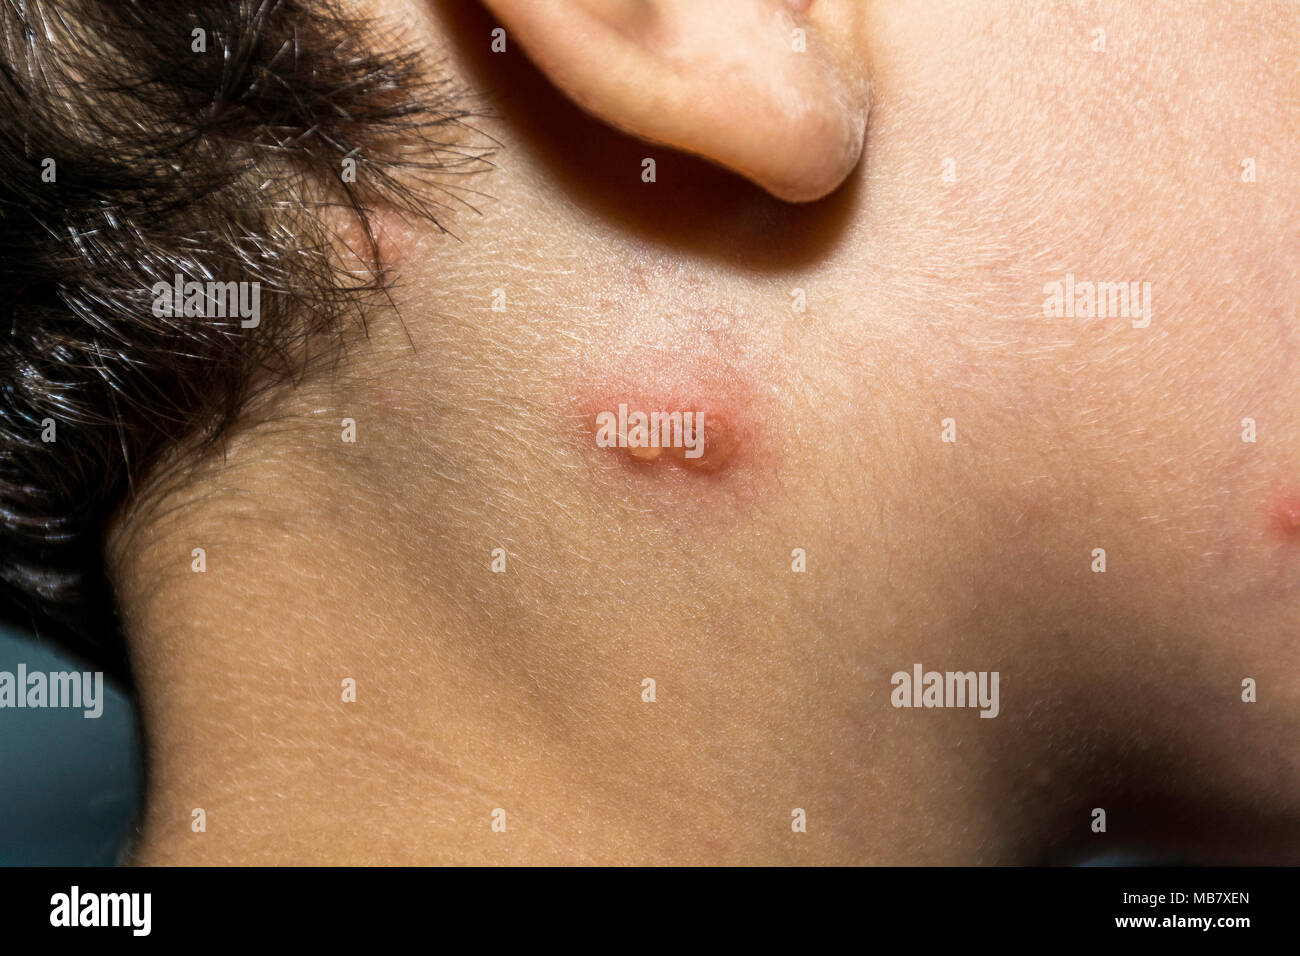 Nahaufnahme von Varicella-zoster Virus oder Windpocken bubble Hautausschlag im Gesicht und Hals des Kindes. Dermatologie Begriff. Stockfoto